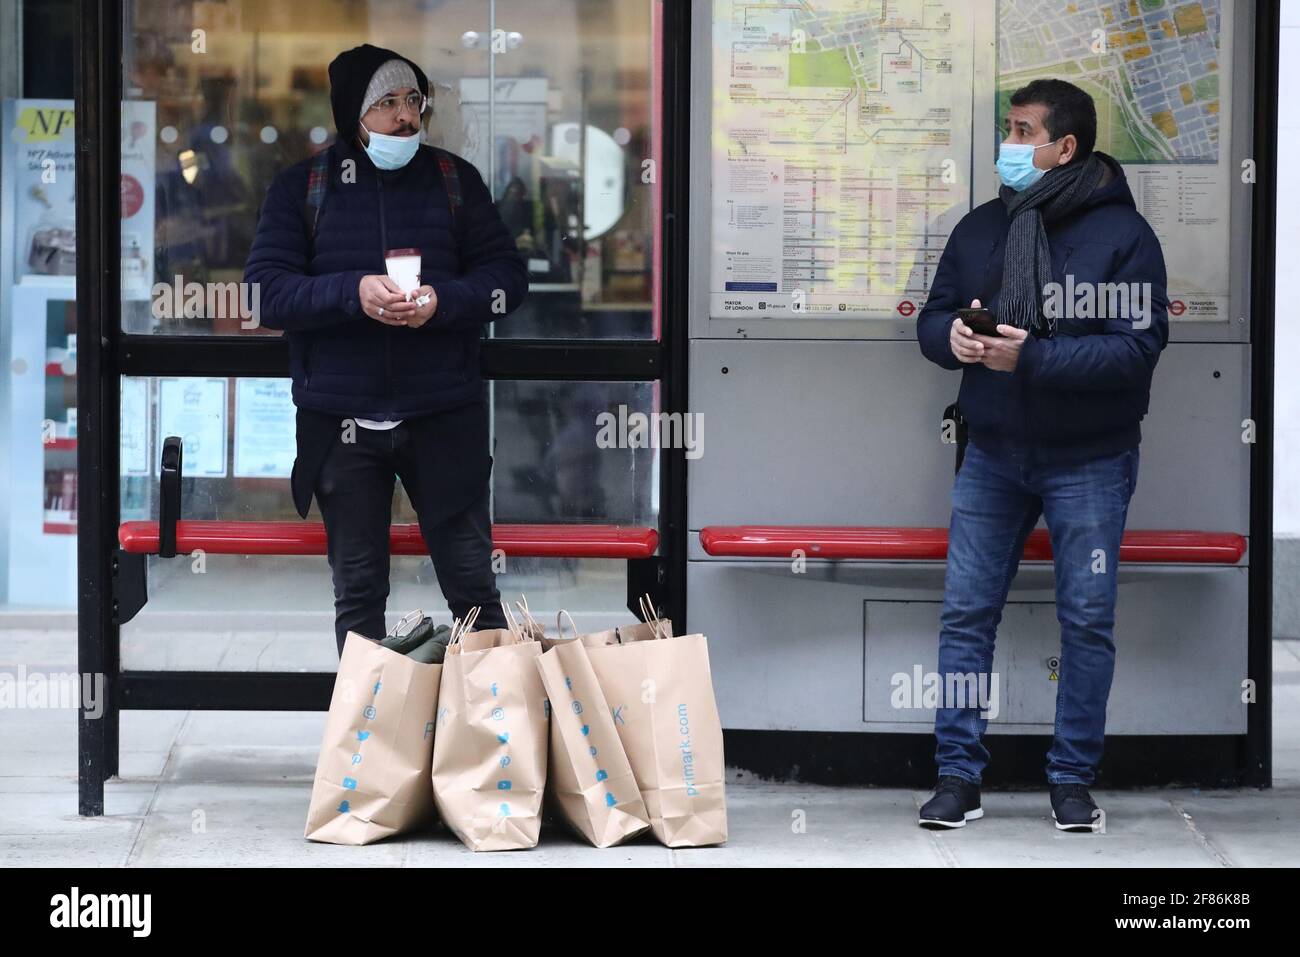 Zwei Männer stehen an einer Bushaltestelle in der Oxford Street, London, neben ihren Primark-Einkaufstaschen, nachdem das Geschäft am frühen Morgen wieder eröffnet wurde und die Sperrbeschränkungen in England weiter gelockert wurden. Bilddatum: Montag, 12. April 2021. Stockfoto